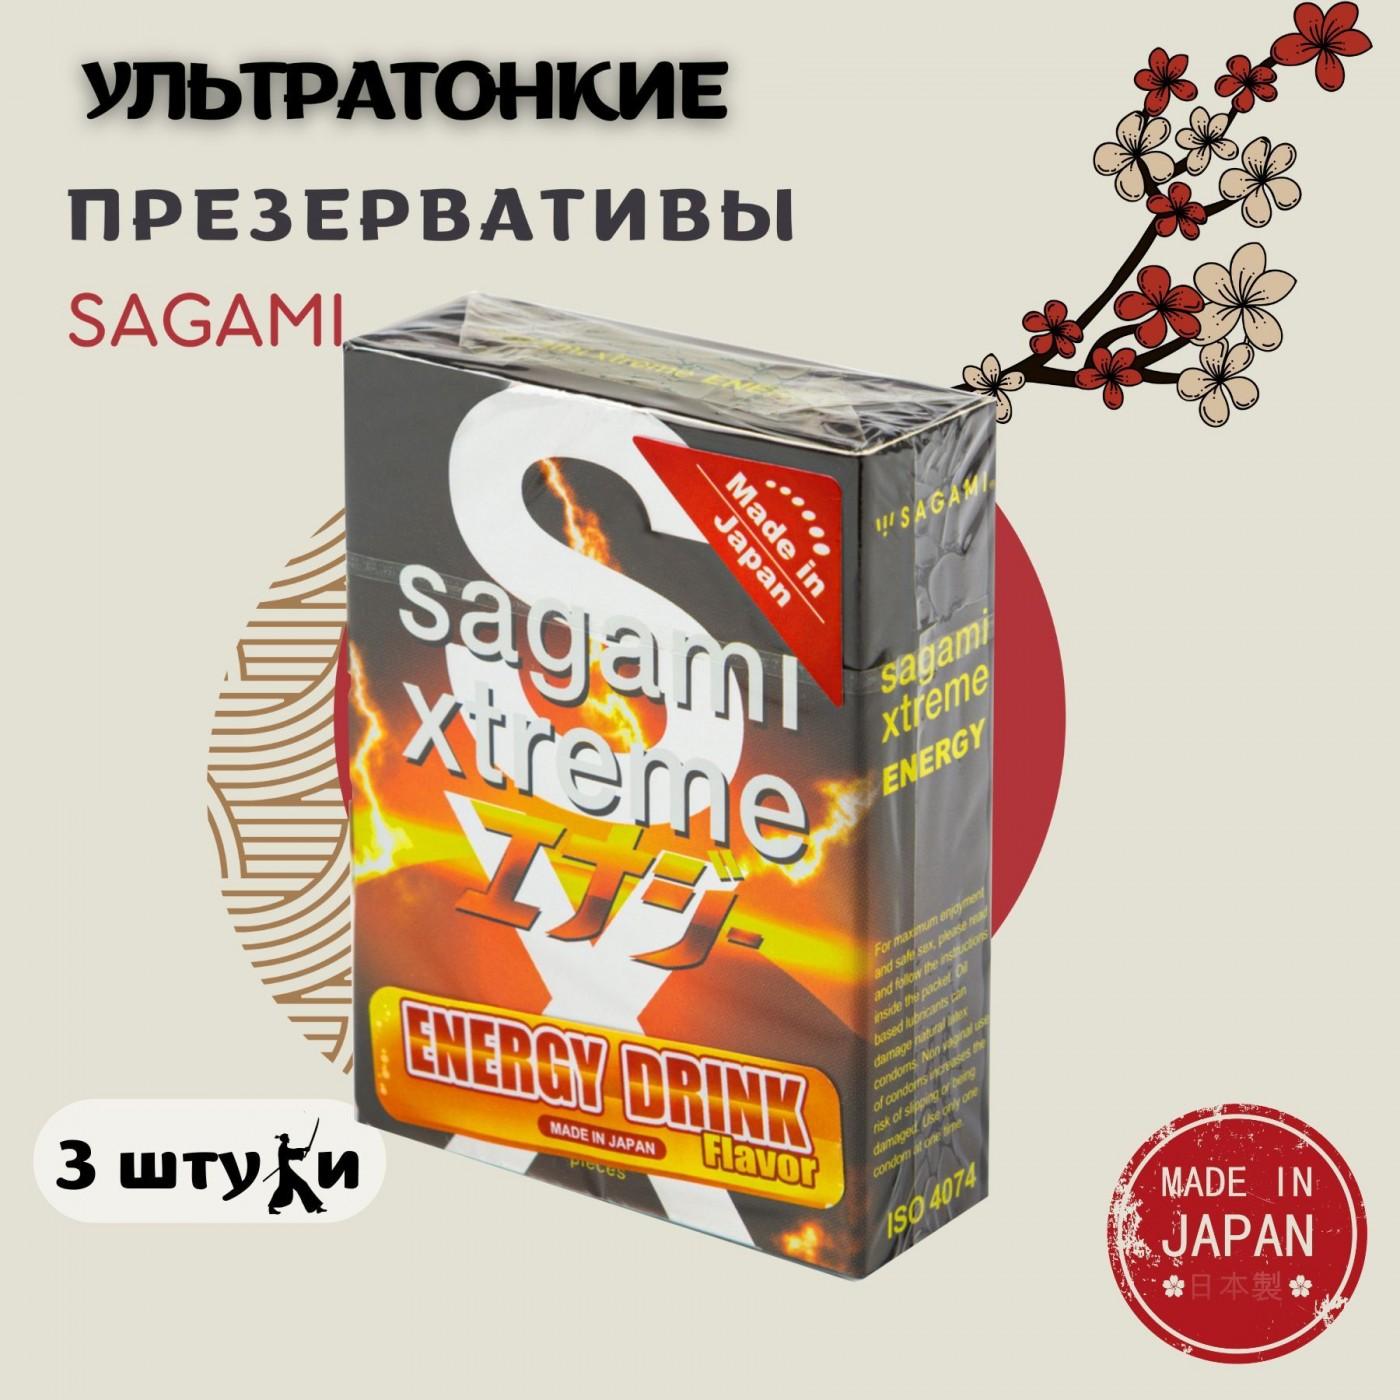 SAGAMI Energy ультратонкие презервативы со вкусом энергетического напитка 3 шт. Vestalshop.ru - Изображение 1